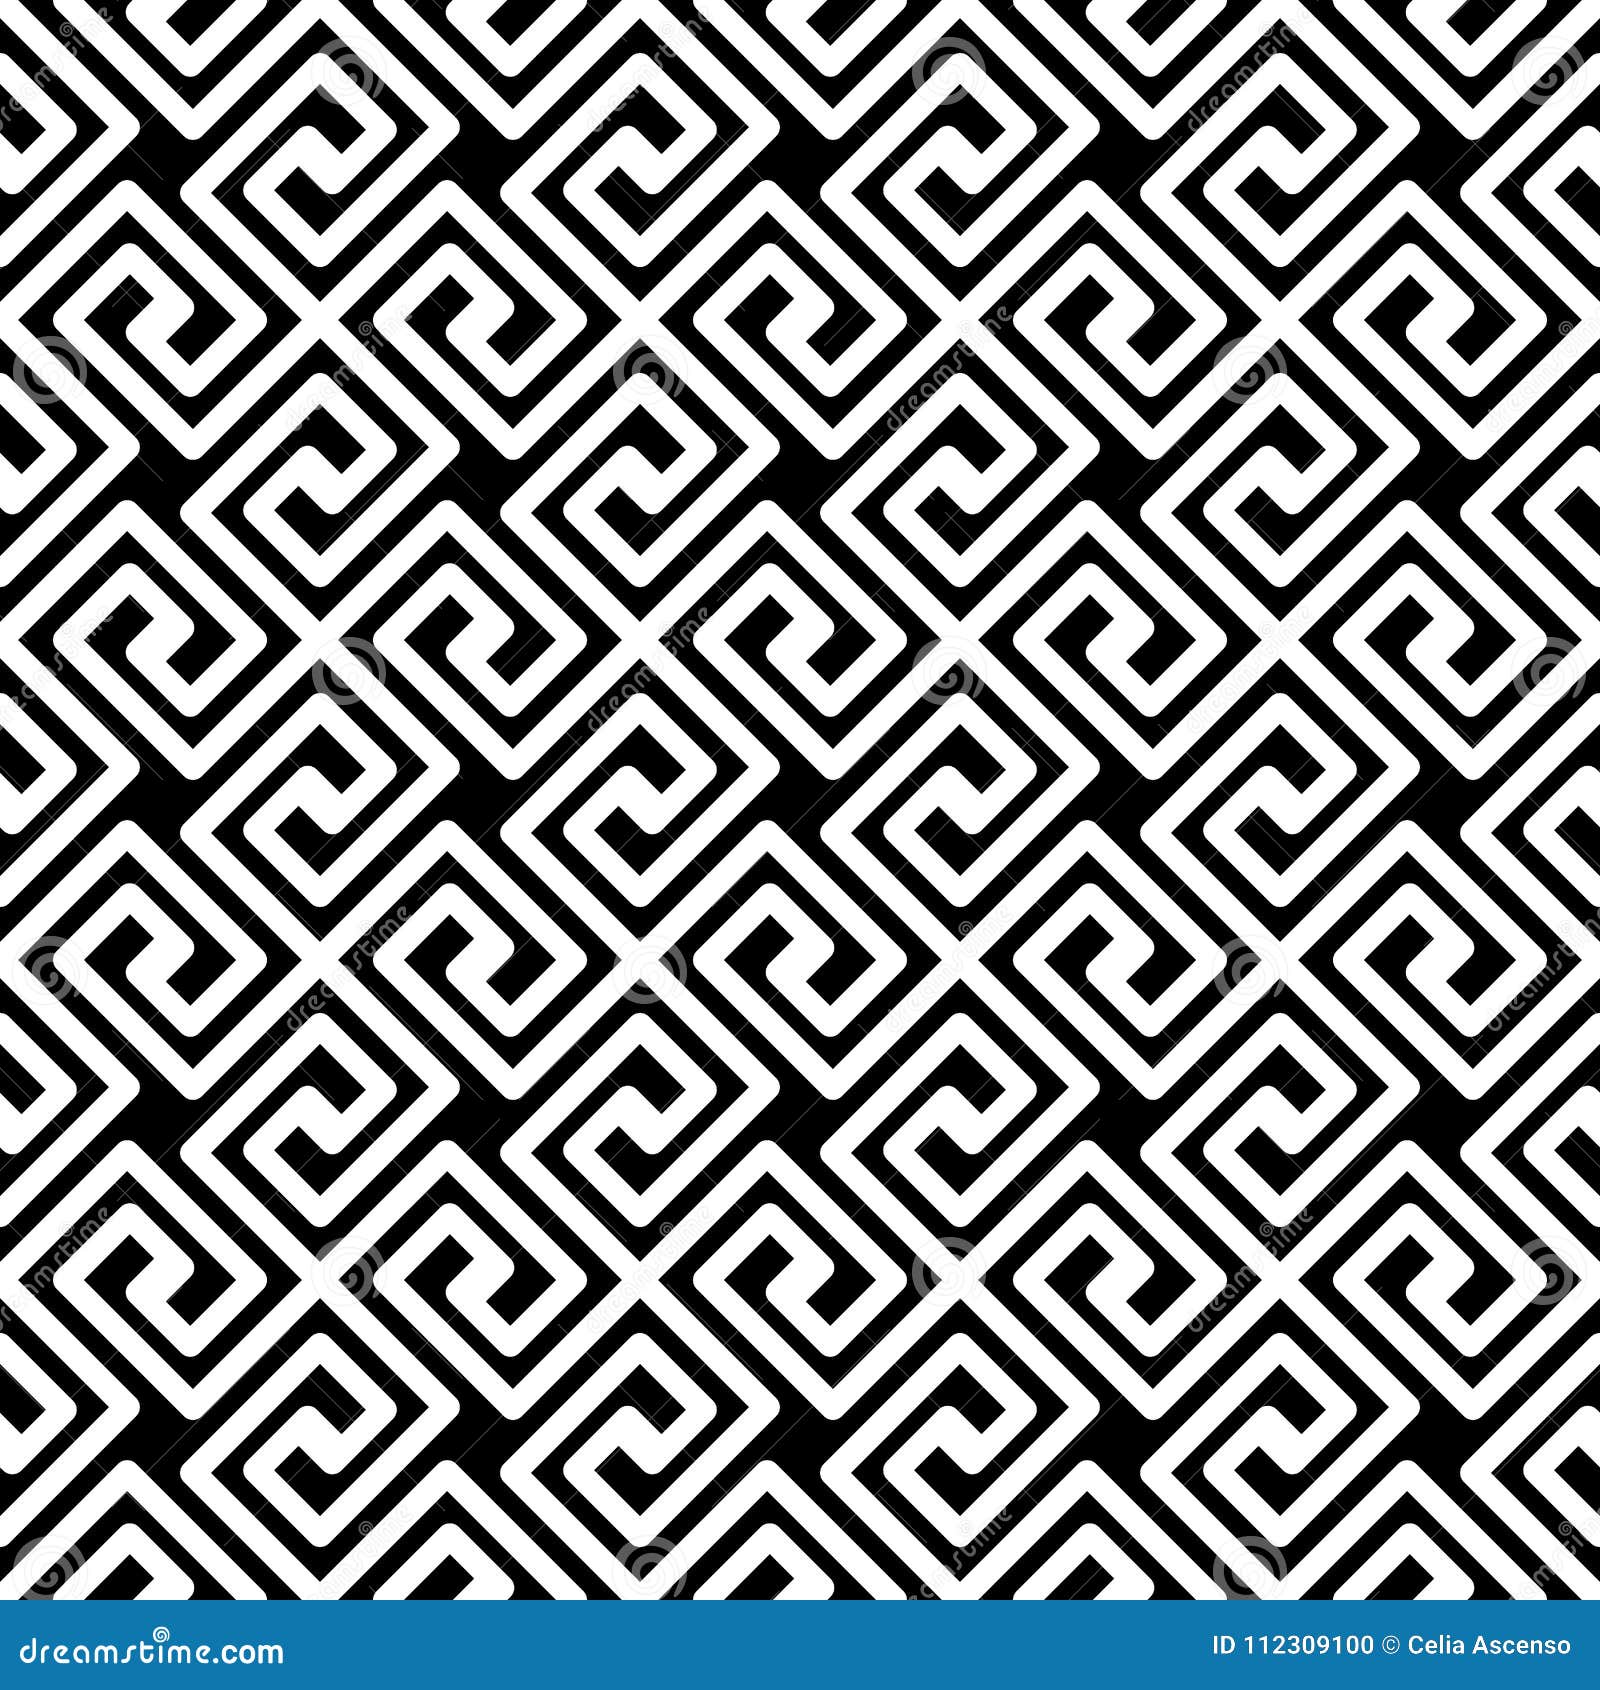 greek key diagonal seamless pattern